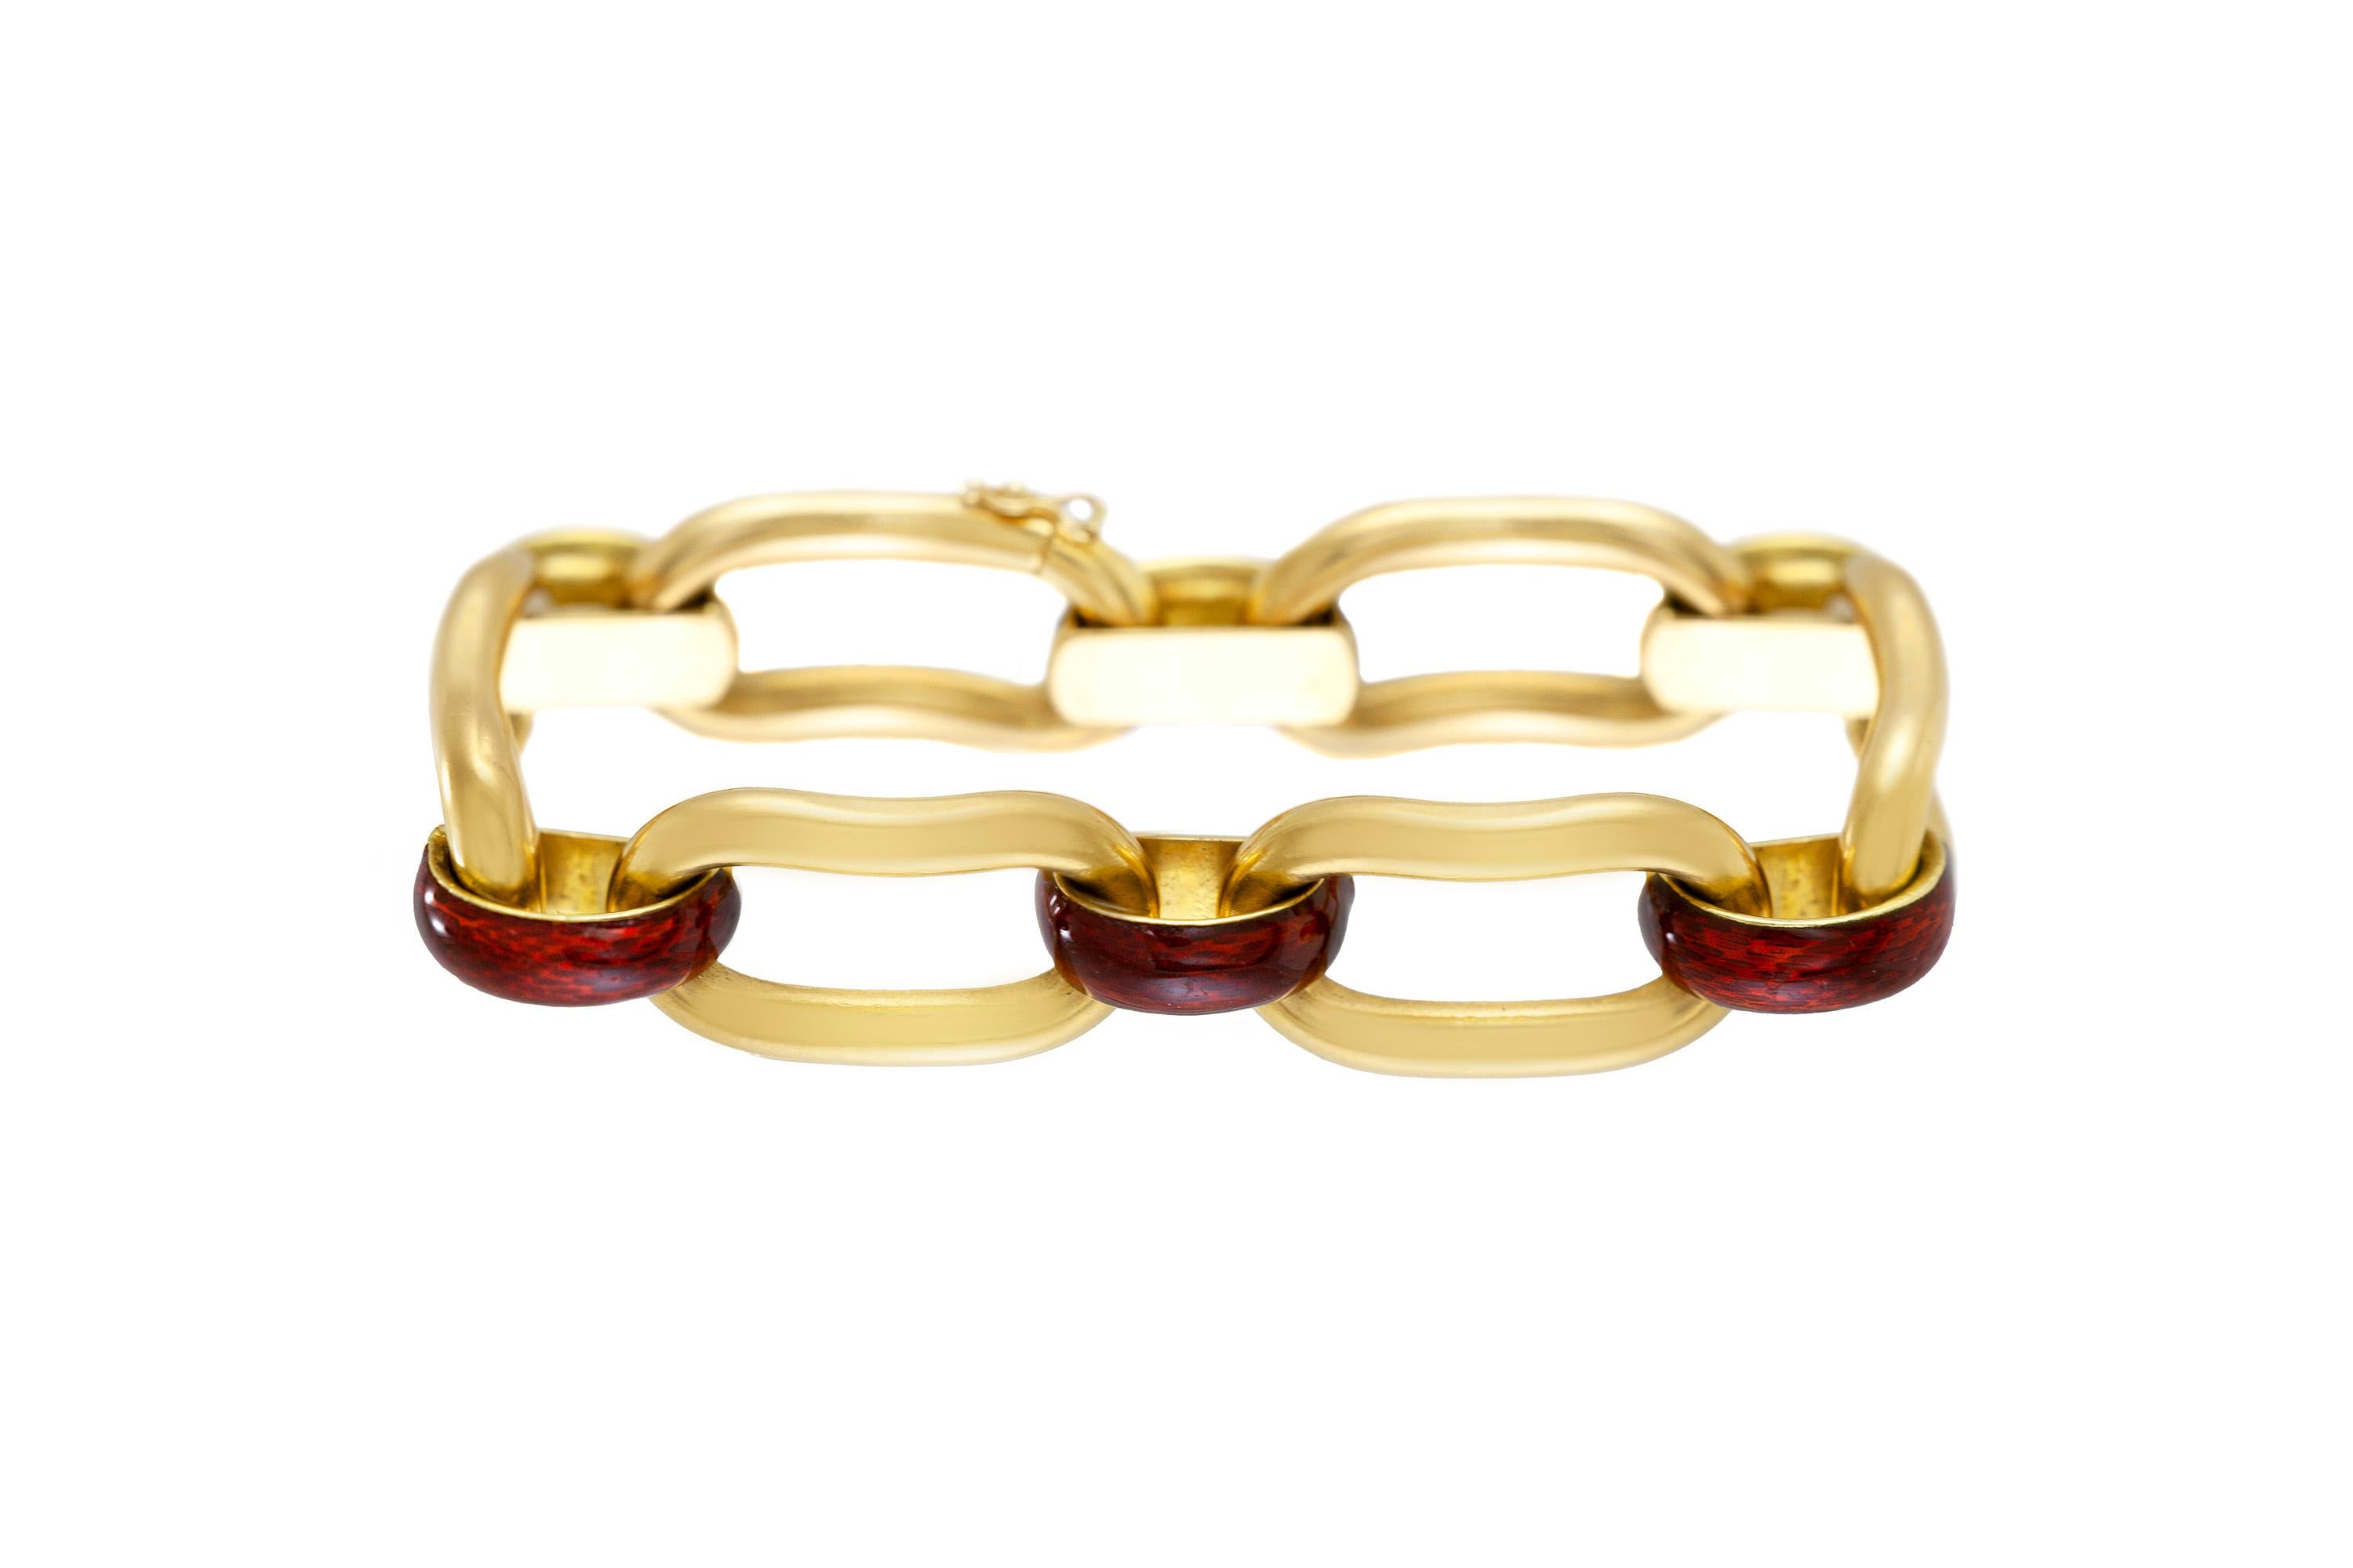 Le bracelet est finement travaillé en or jaune 18k avec de l'émail brun et pèse environ 30,3 dwt au total.
Circa 1960.